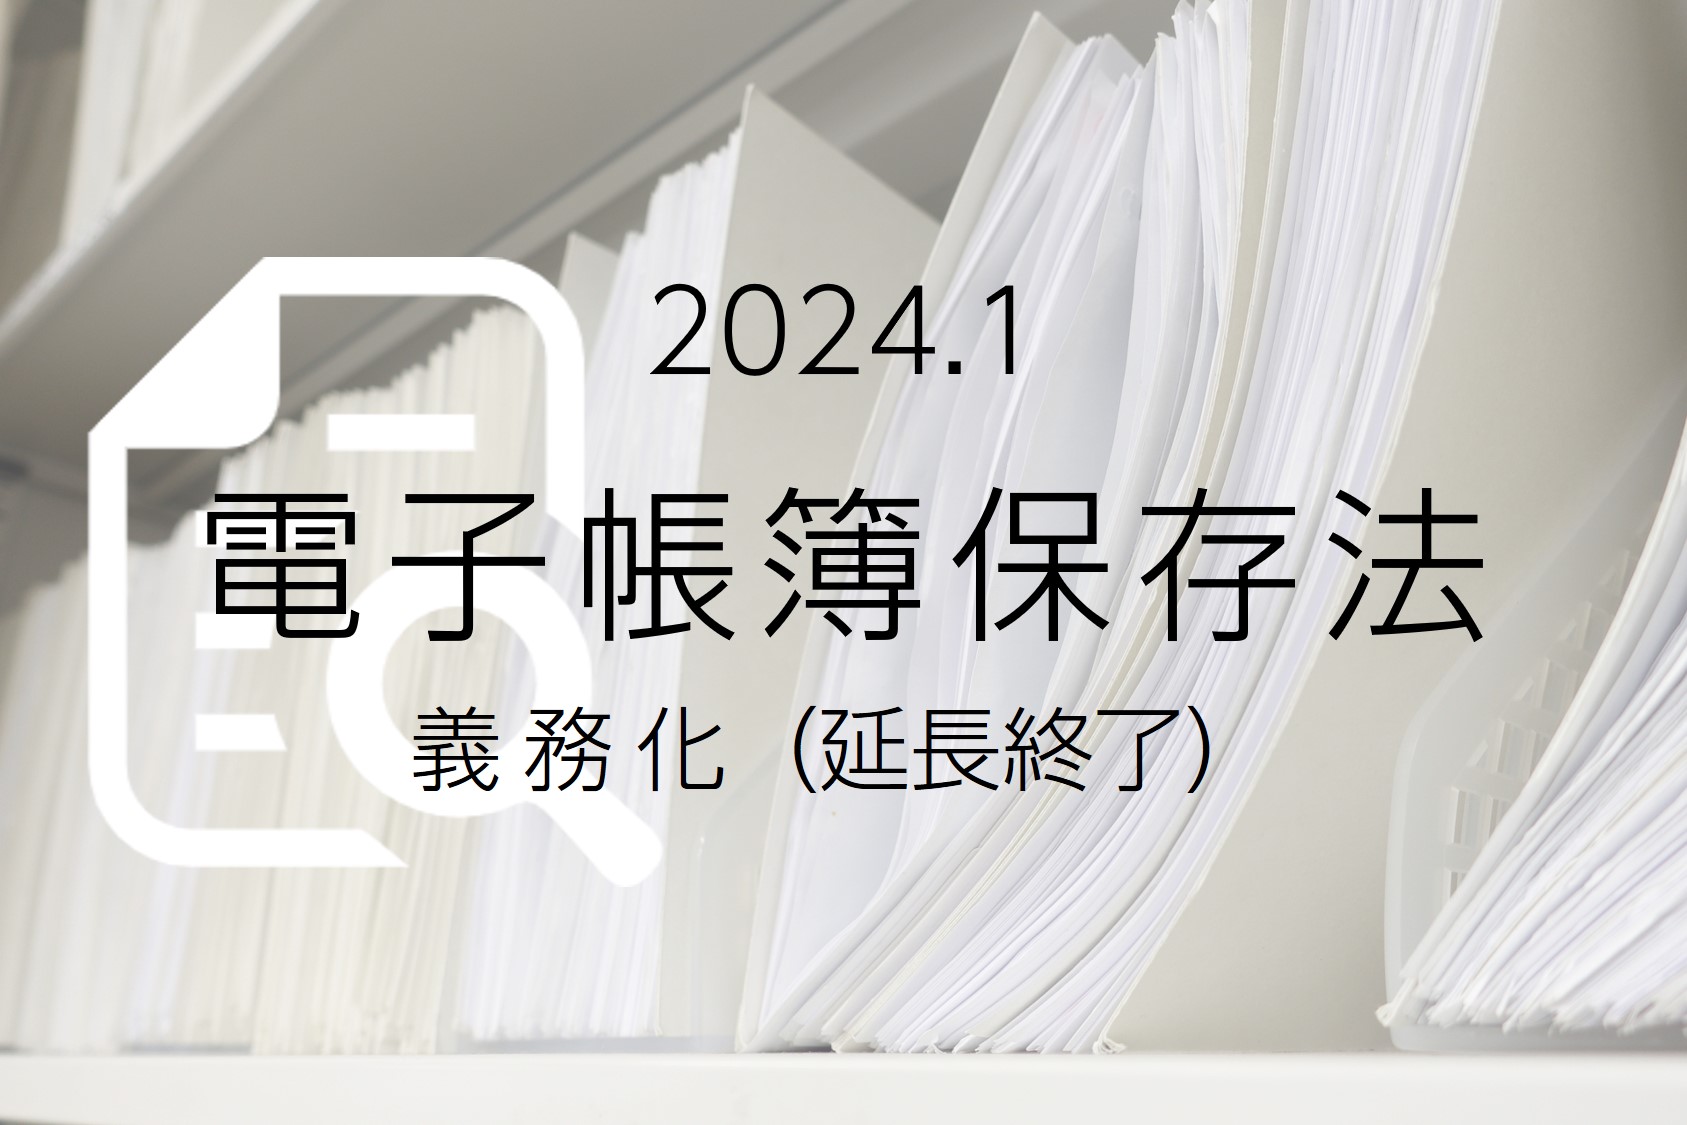 2024年1月義務化（延長終了）！電子帳簿保存法による影響は？